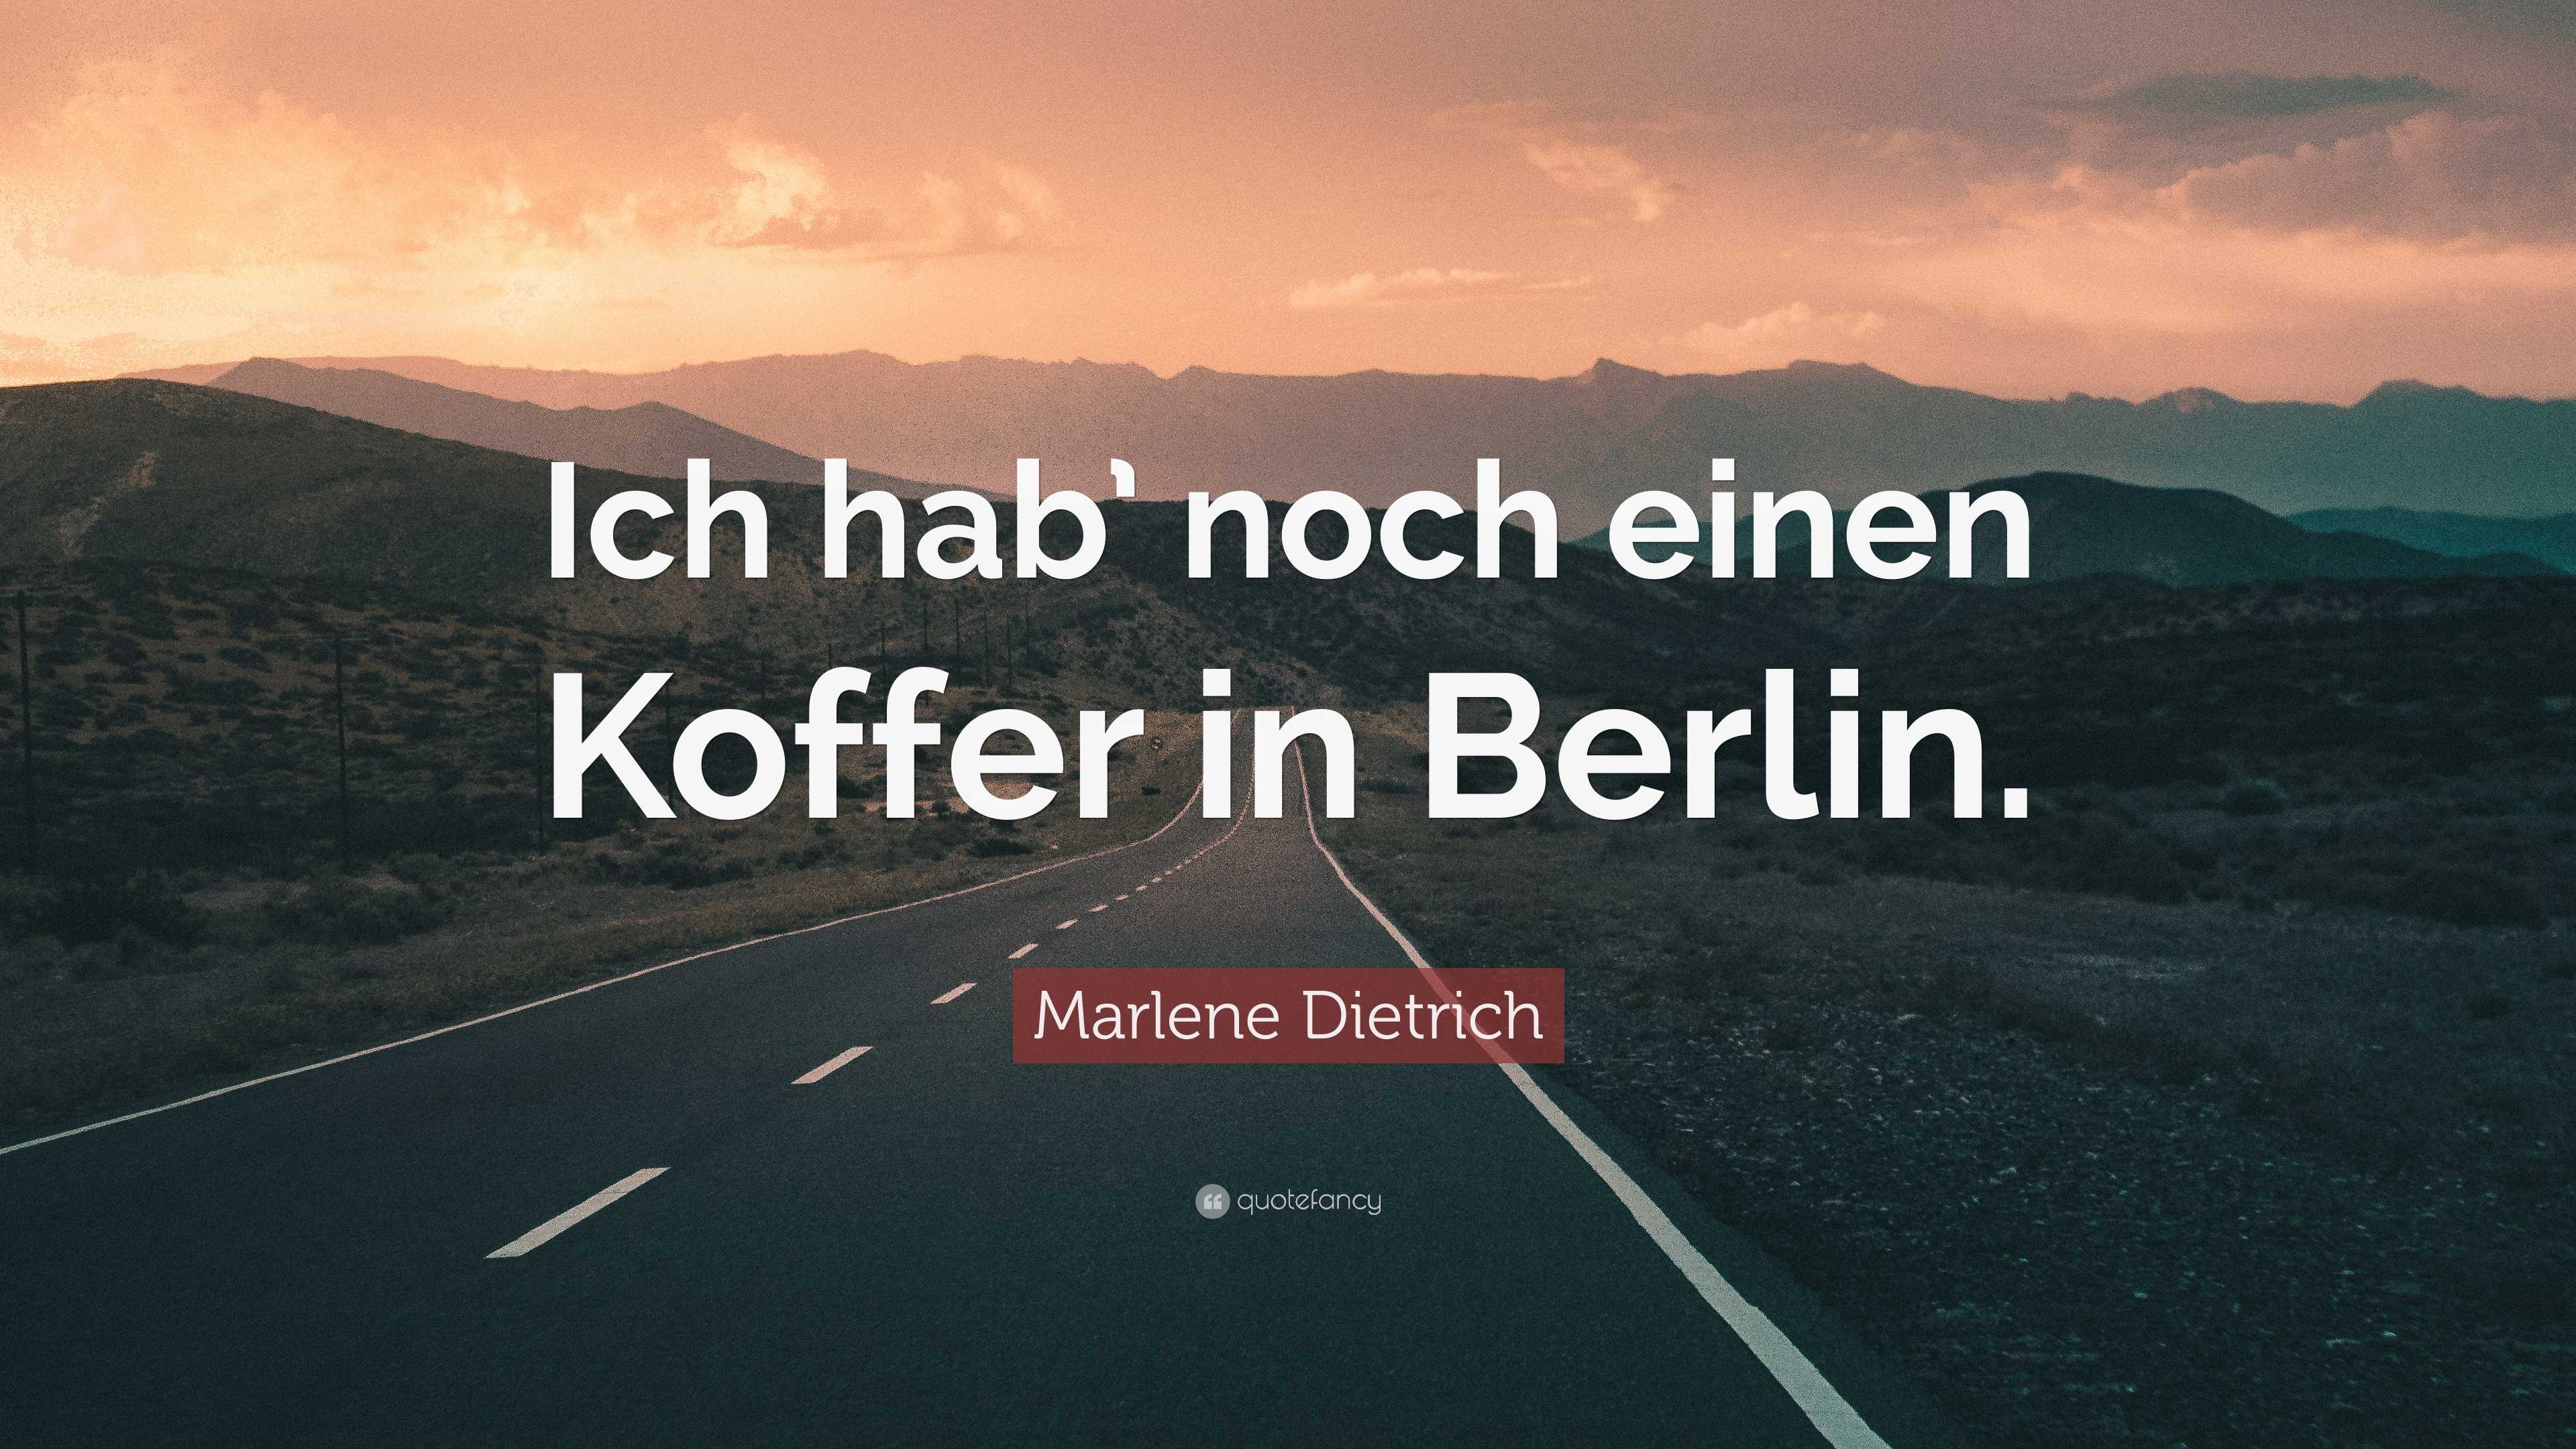 Marlene Dietrich Quote: “Ich hab' noch einen Koffer in Berlin.”